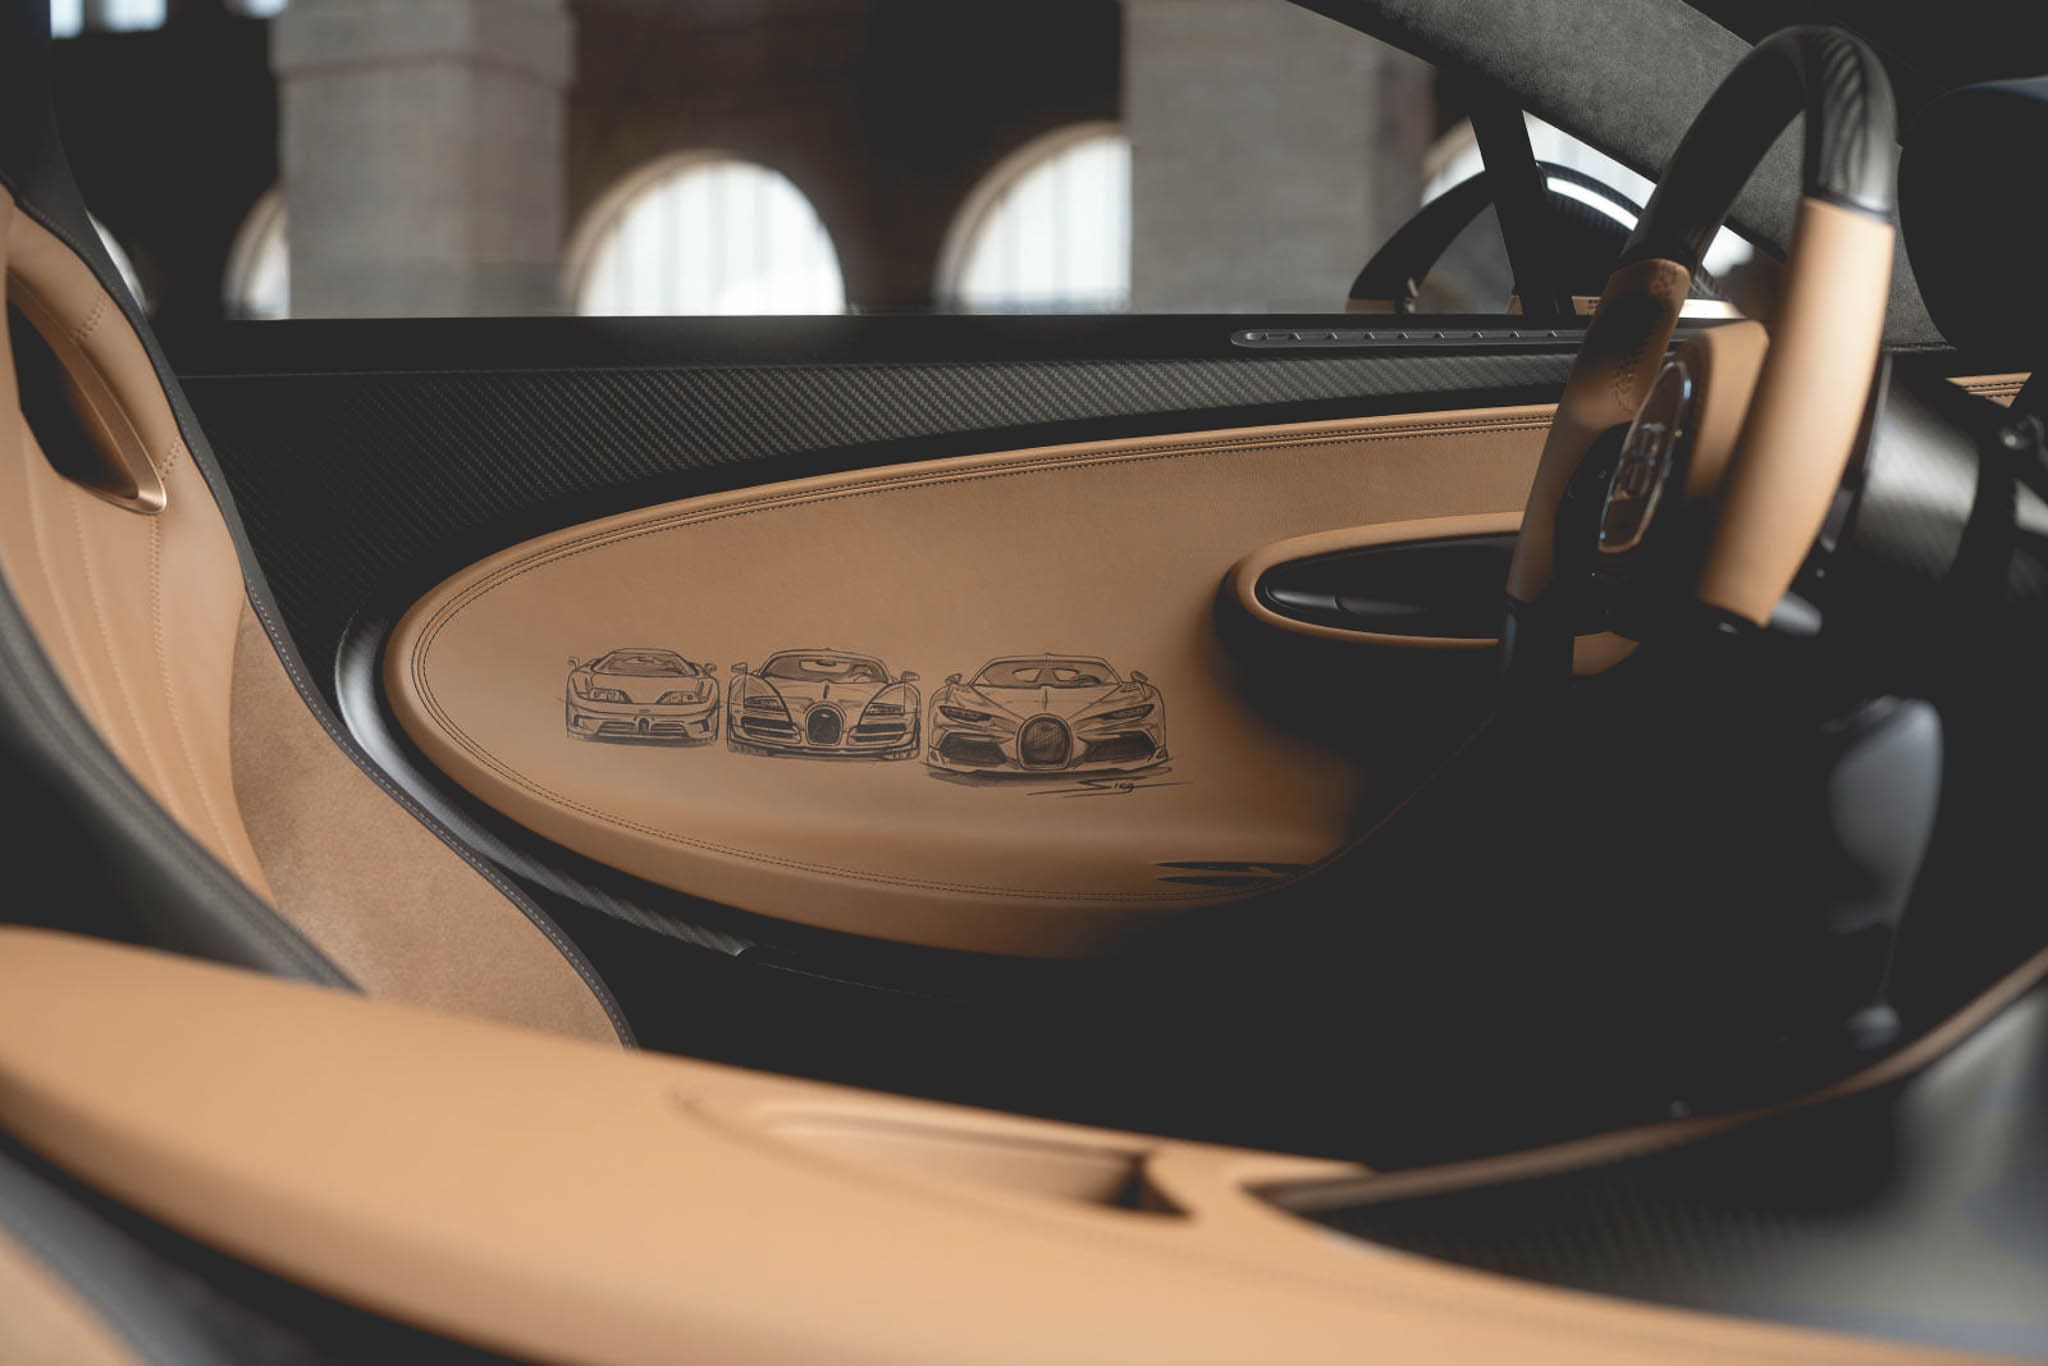 Golden Era, <strong>Bugatti Chiron</strong> krijgt gouden randje met &#8216;Super Sport Golden Era&#8217;